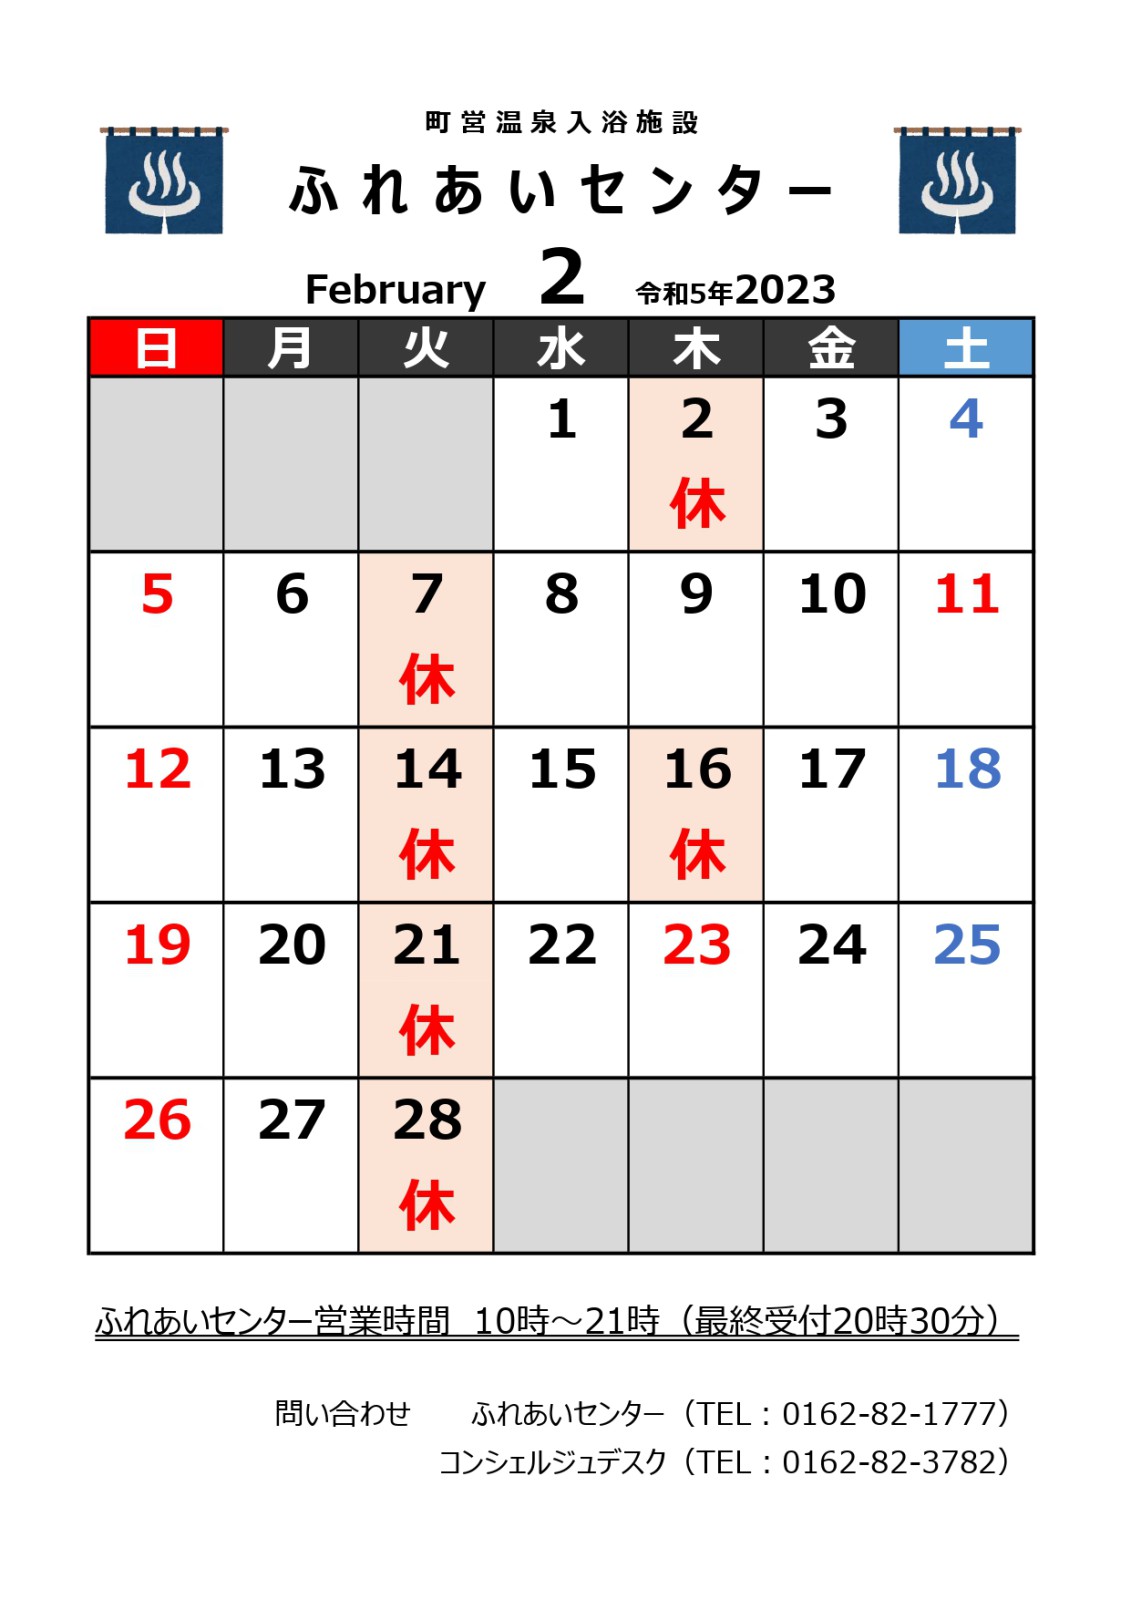 【ふれあいセンター】2月の営業について